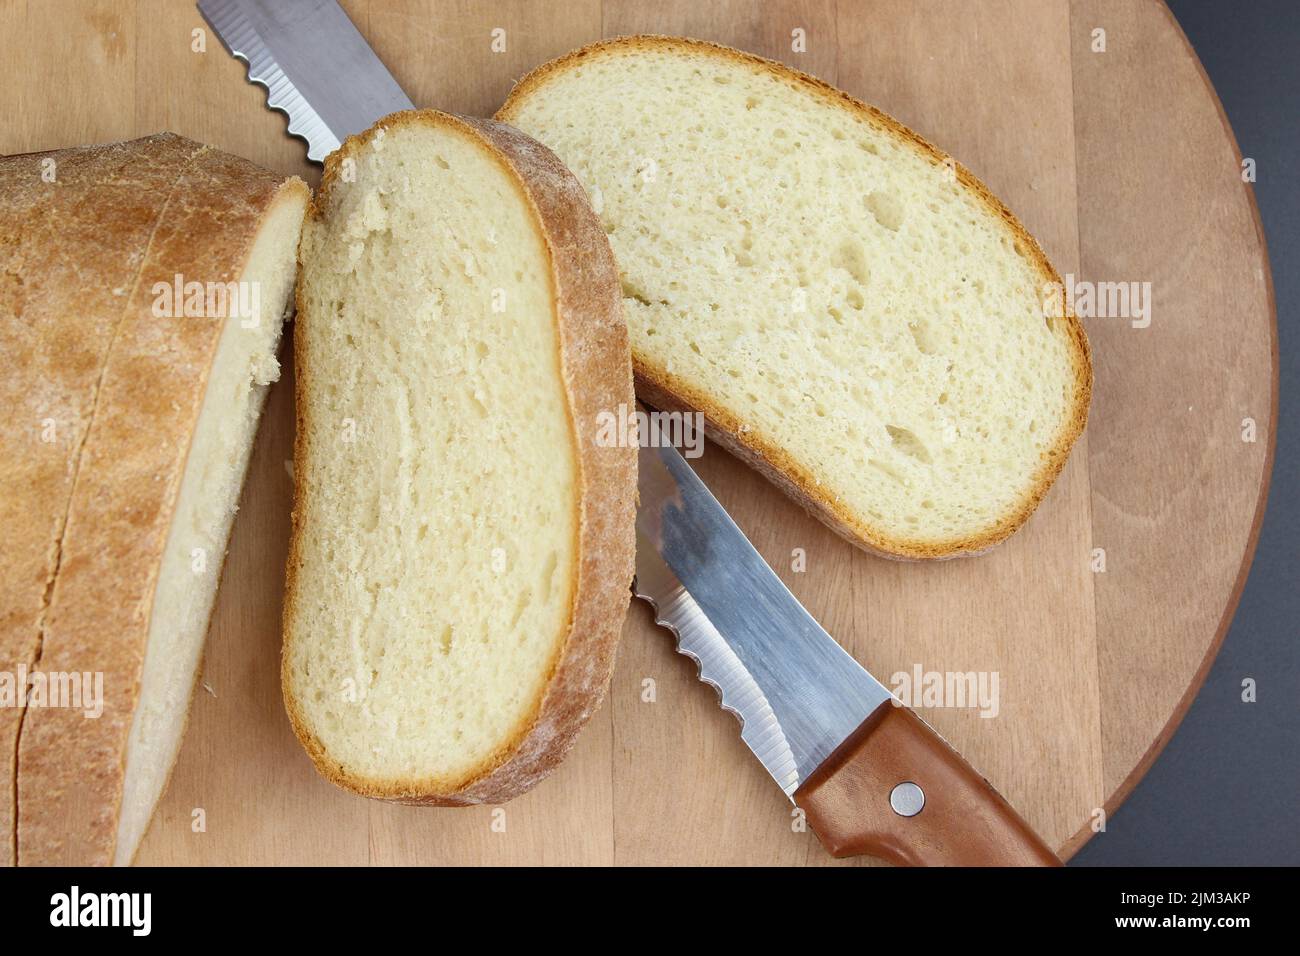 Plat de pain fraîchement cuit et de tranches de pain sur bois rustique. Banque D'Images